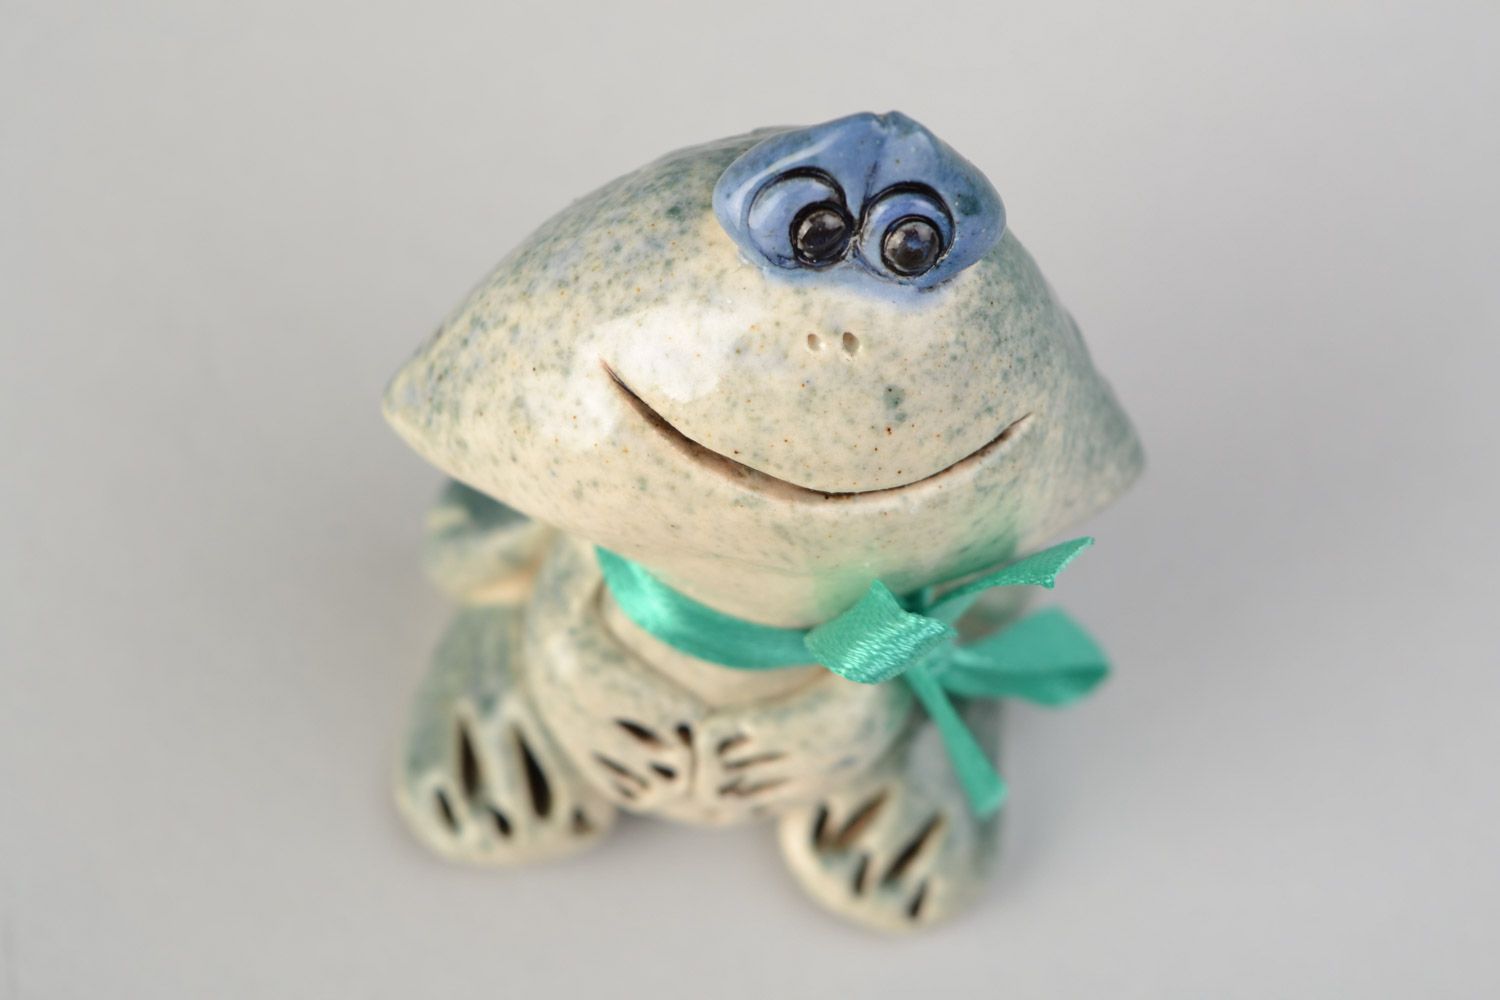 Авторская расписанная глазурью глиняная фигурка лягушки-мальчика ручной работы фото 3